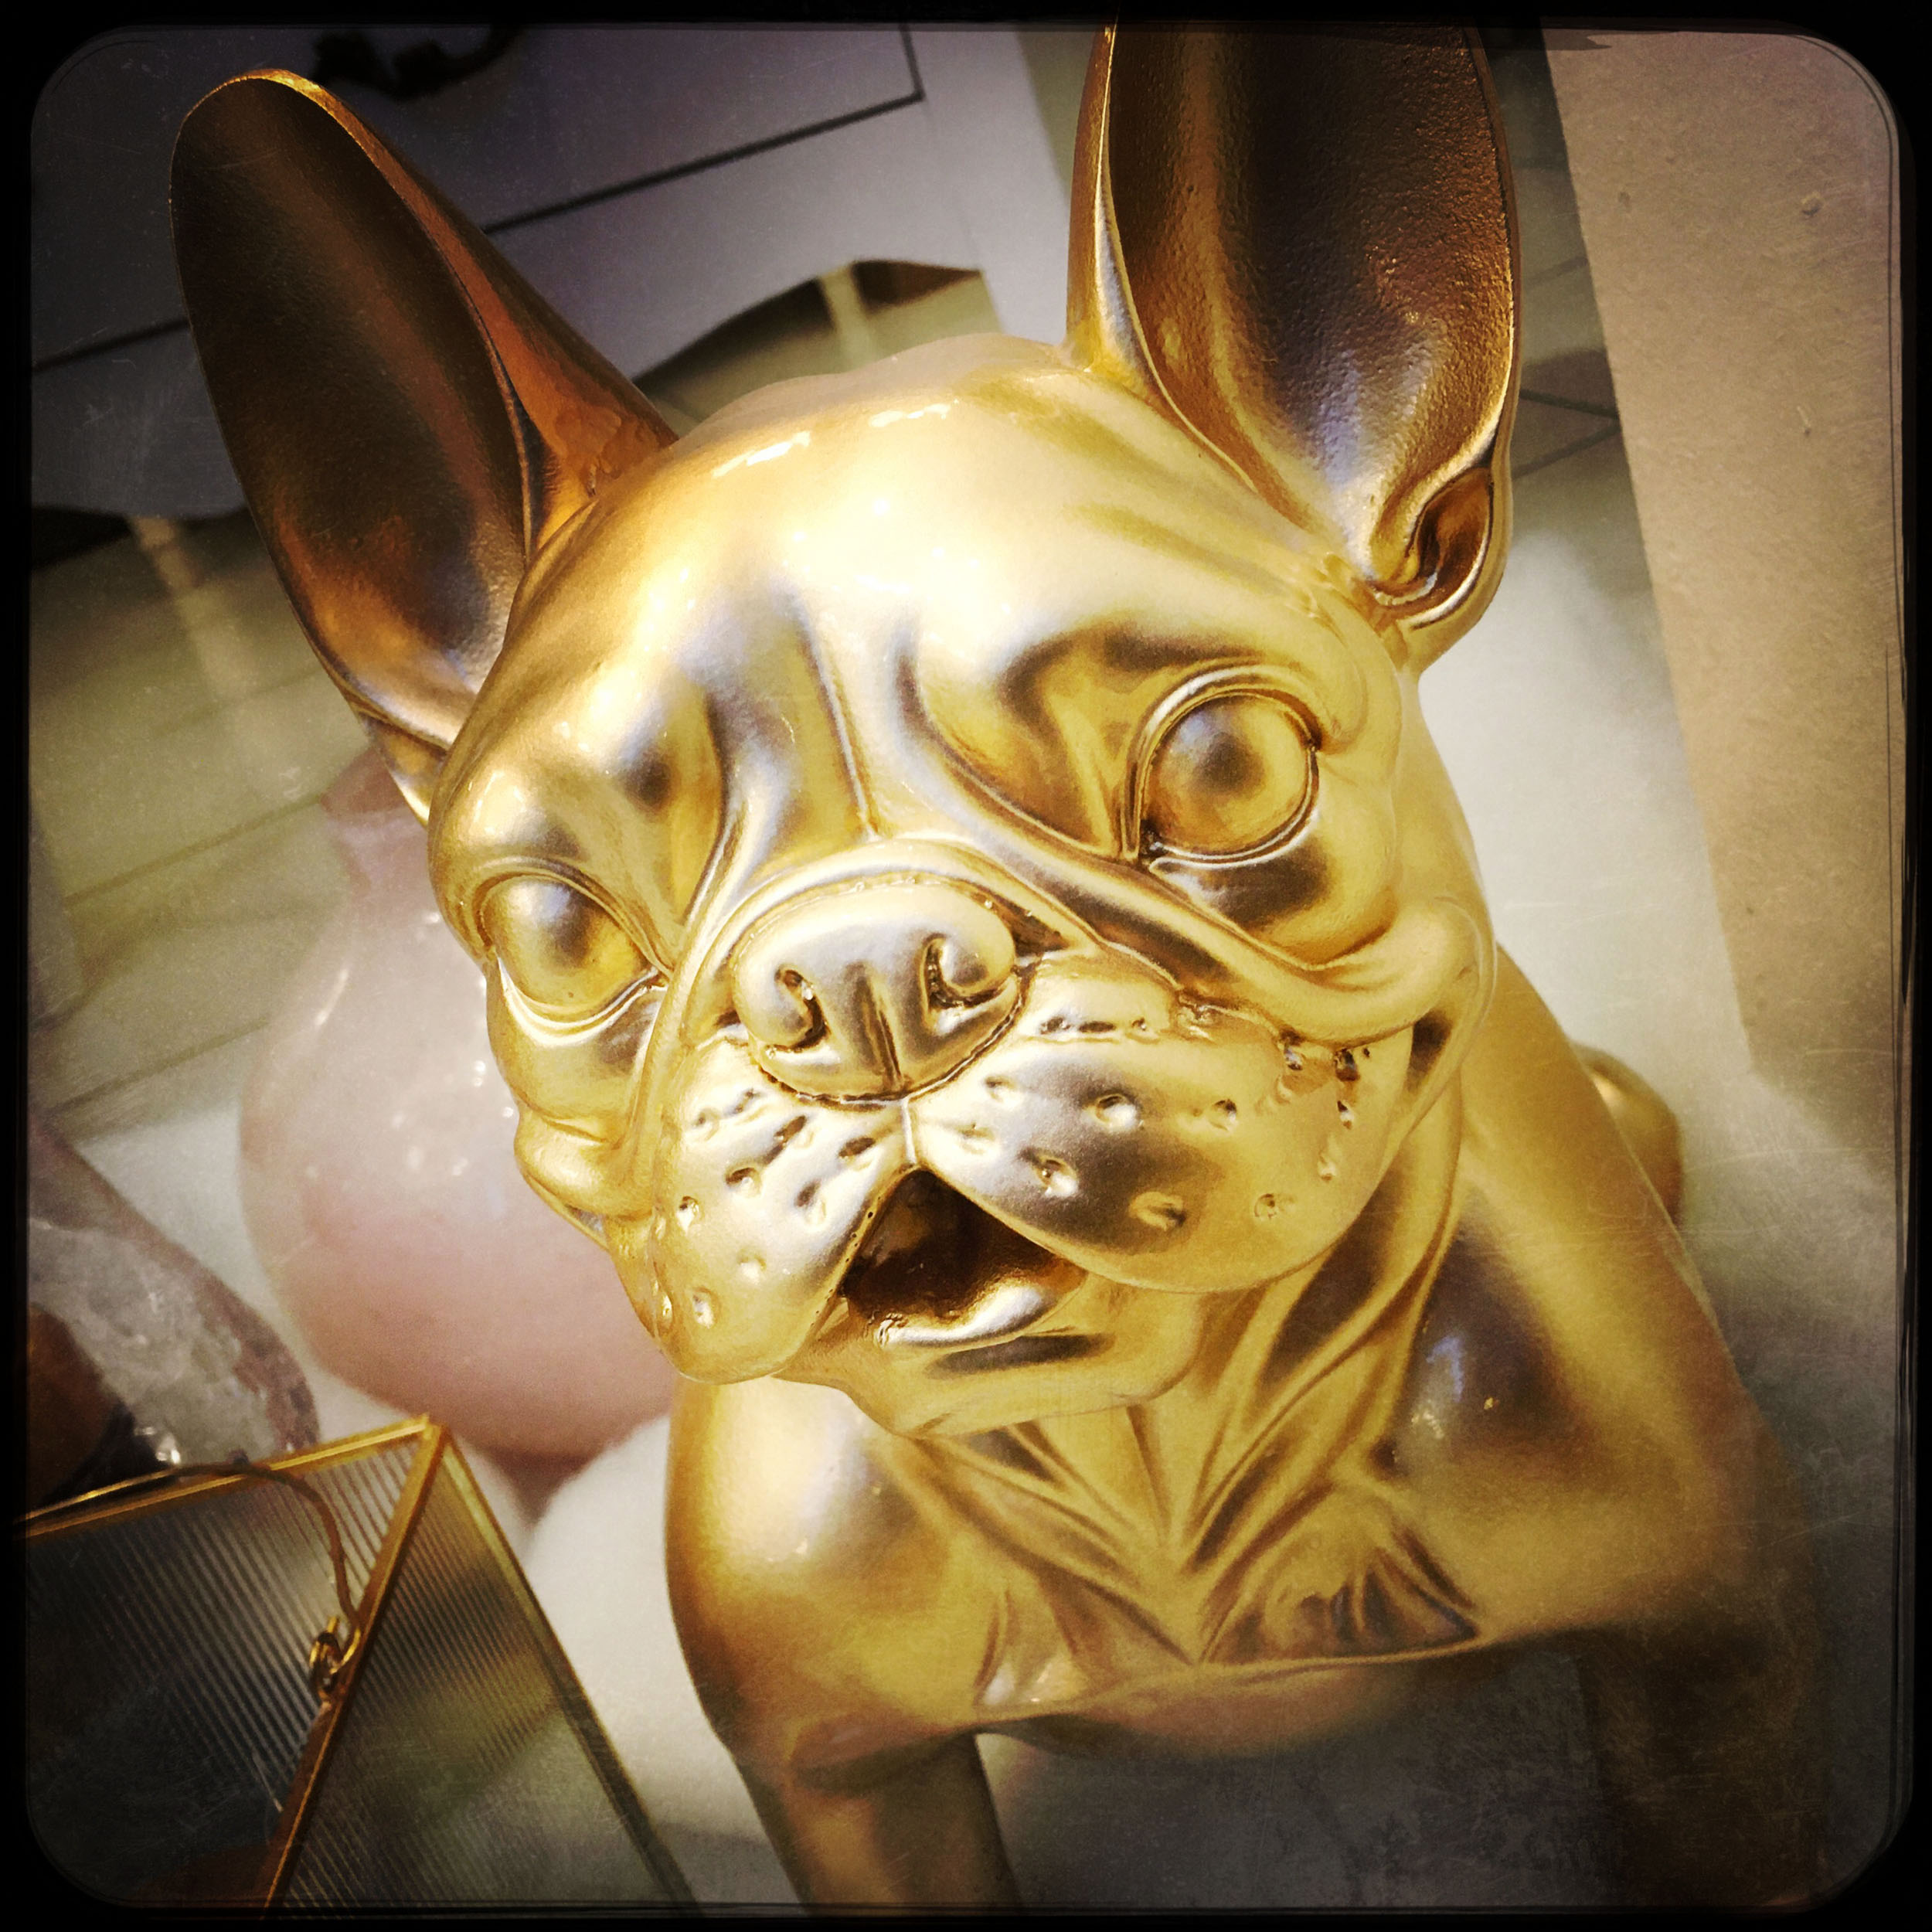 Portrait artistique d'une sculpture de chien doré dans une vitrine. Photo réalisée à l’iPhone à l'aide de l'application Hipstamatic.